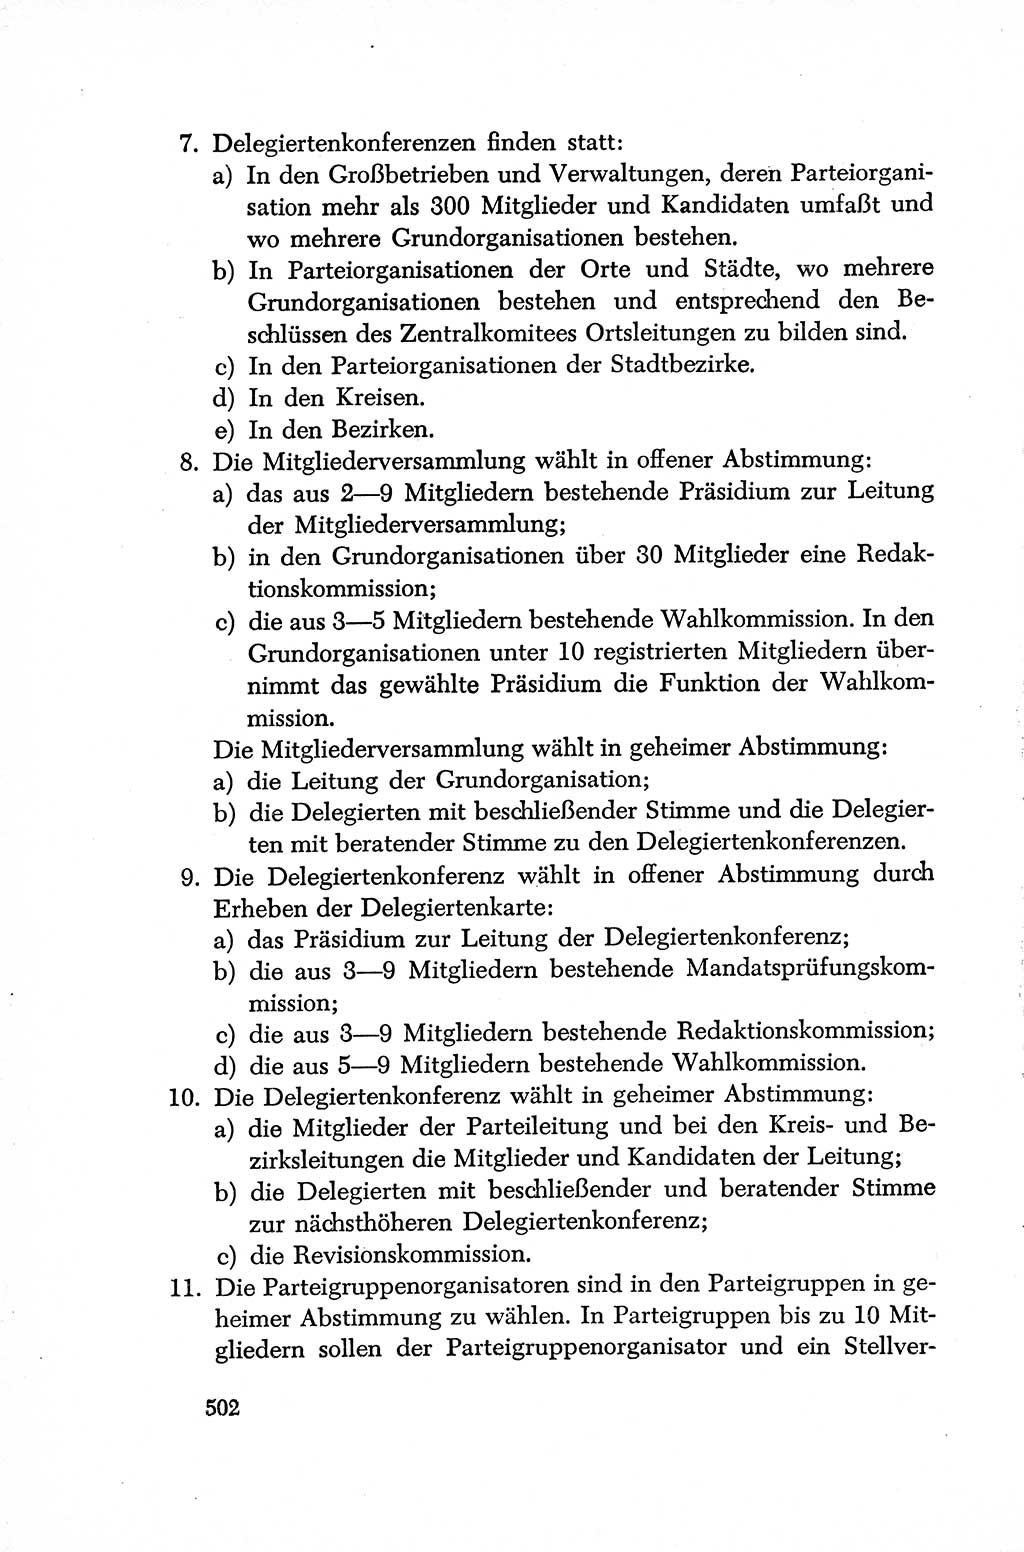 Dokumente der Sozialistischen Einheitspartei Deutschlands (SED) [Deutsche Demokratische Republik (DDR)] 1952-1953, Seite 502 (Dok. SED DDR 1952-1953, S. 502)